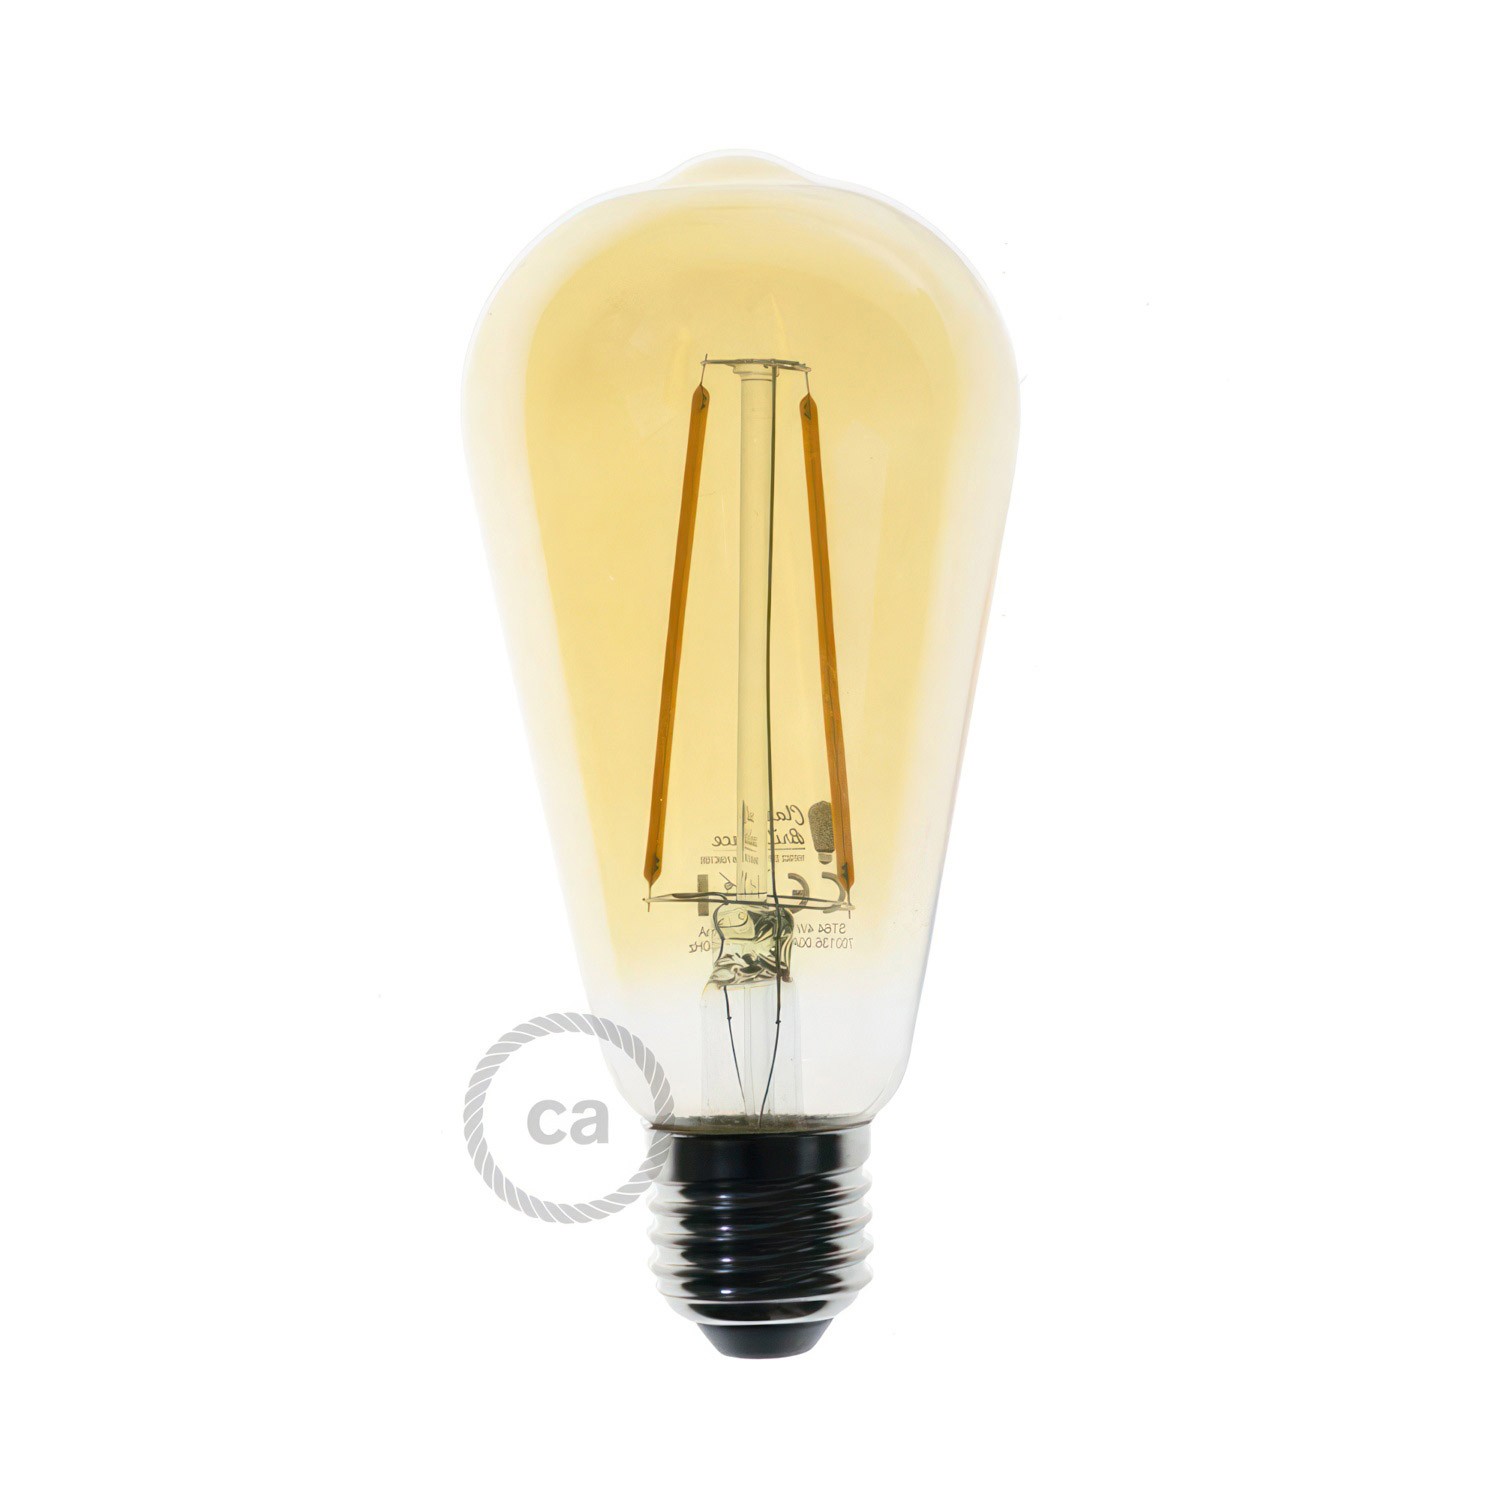 Flex 90 loftslampe fleksibel giver diffust lys med LED ST64 pære